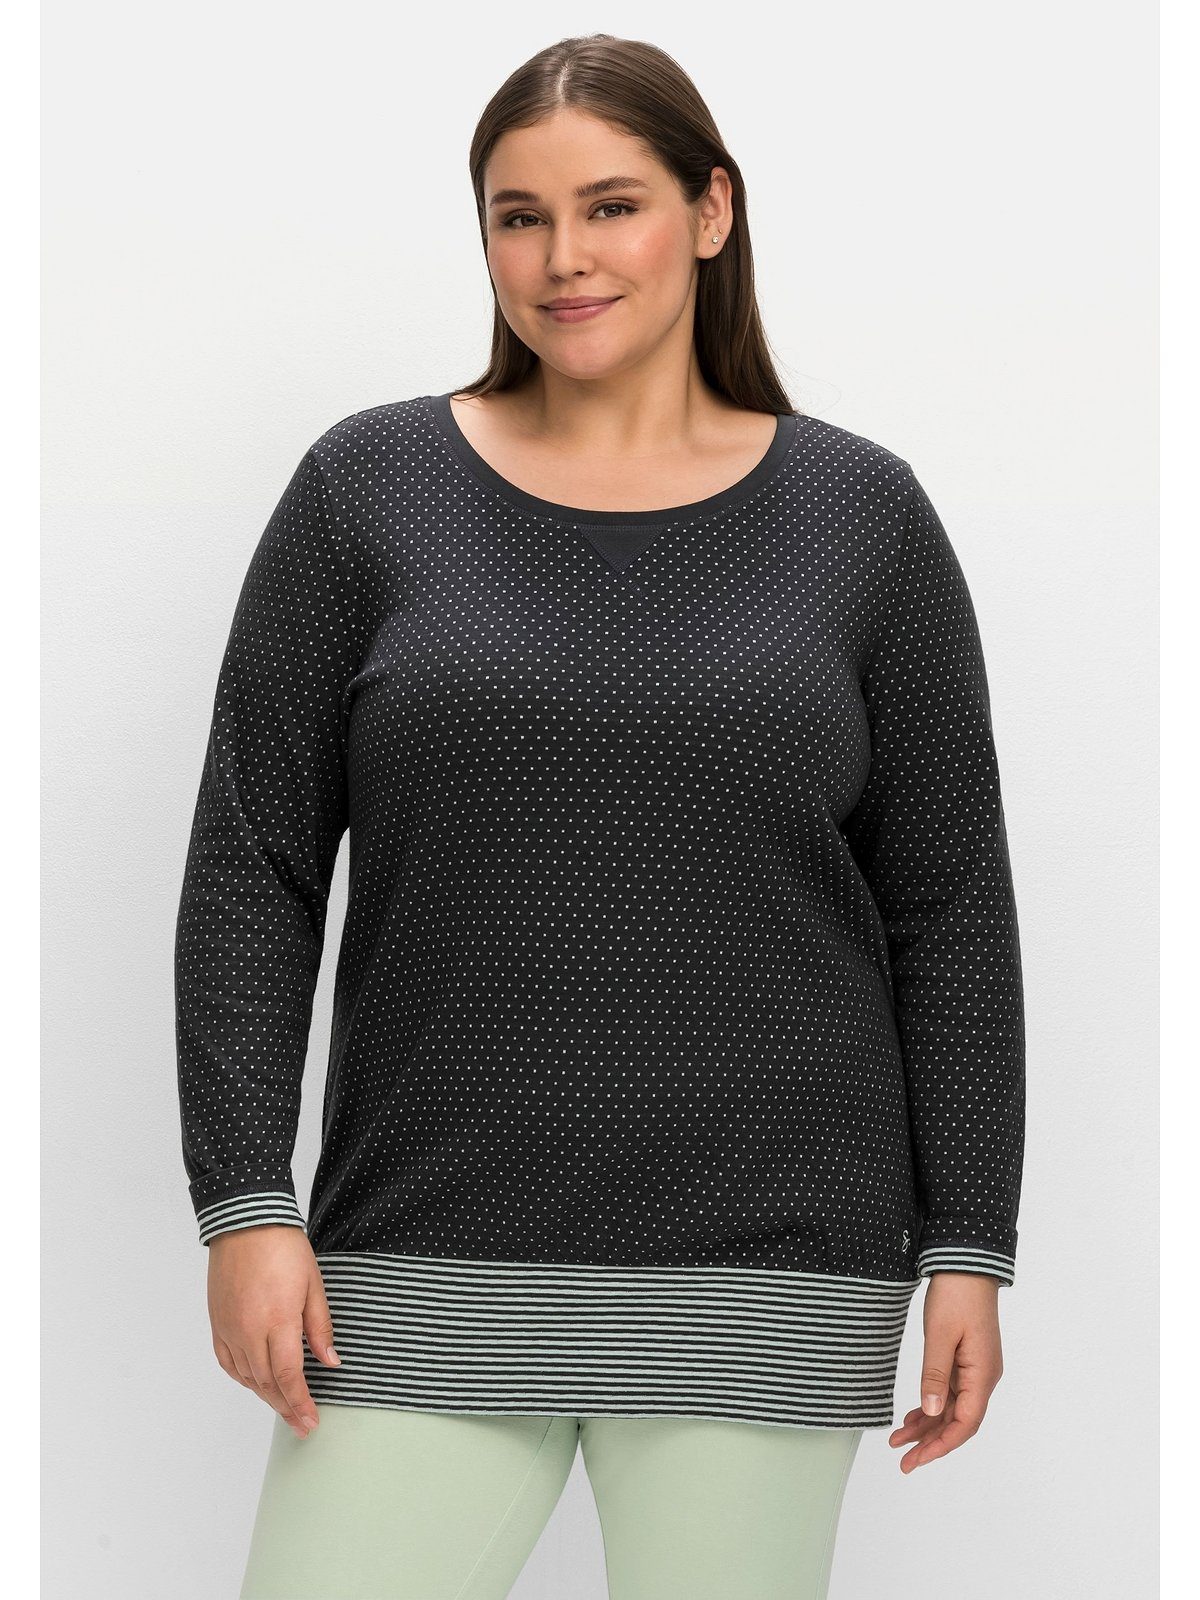 Günstig und beliebt Sheego Sweatshirt Große Größen Longform breitem in mit Saum